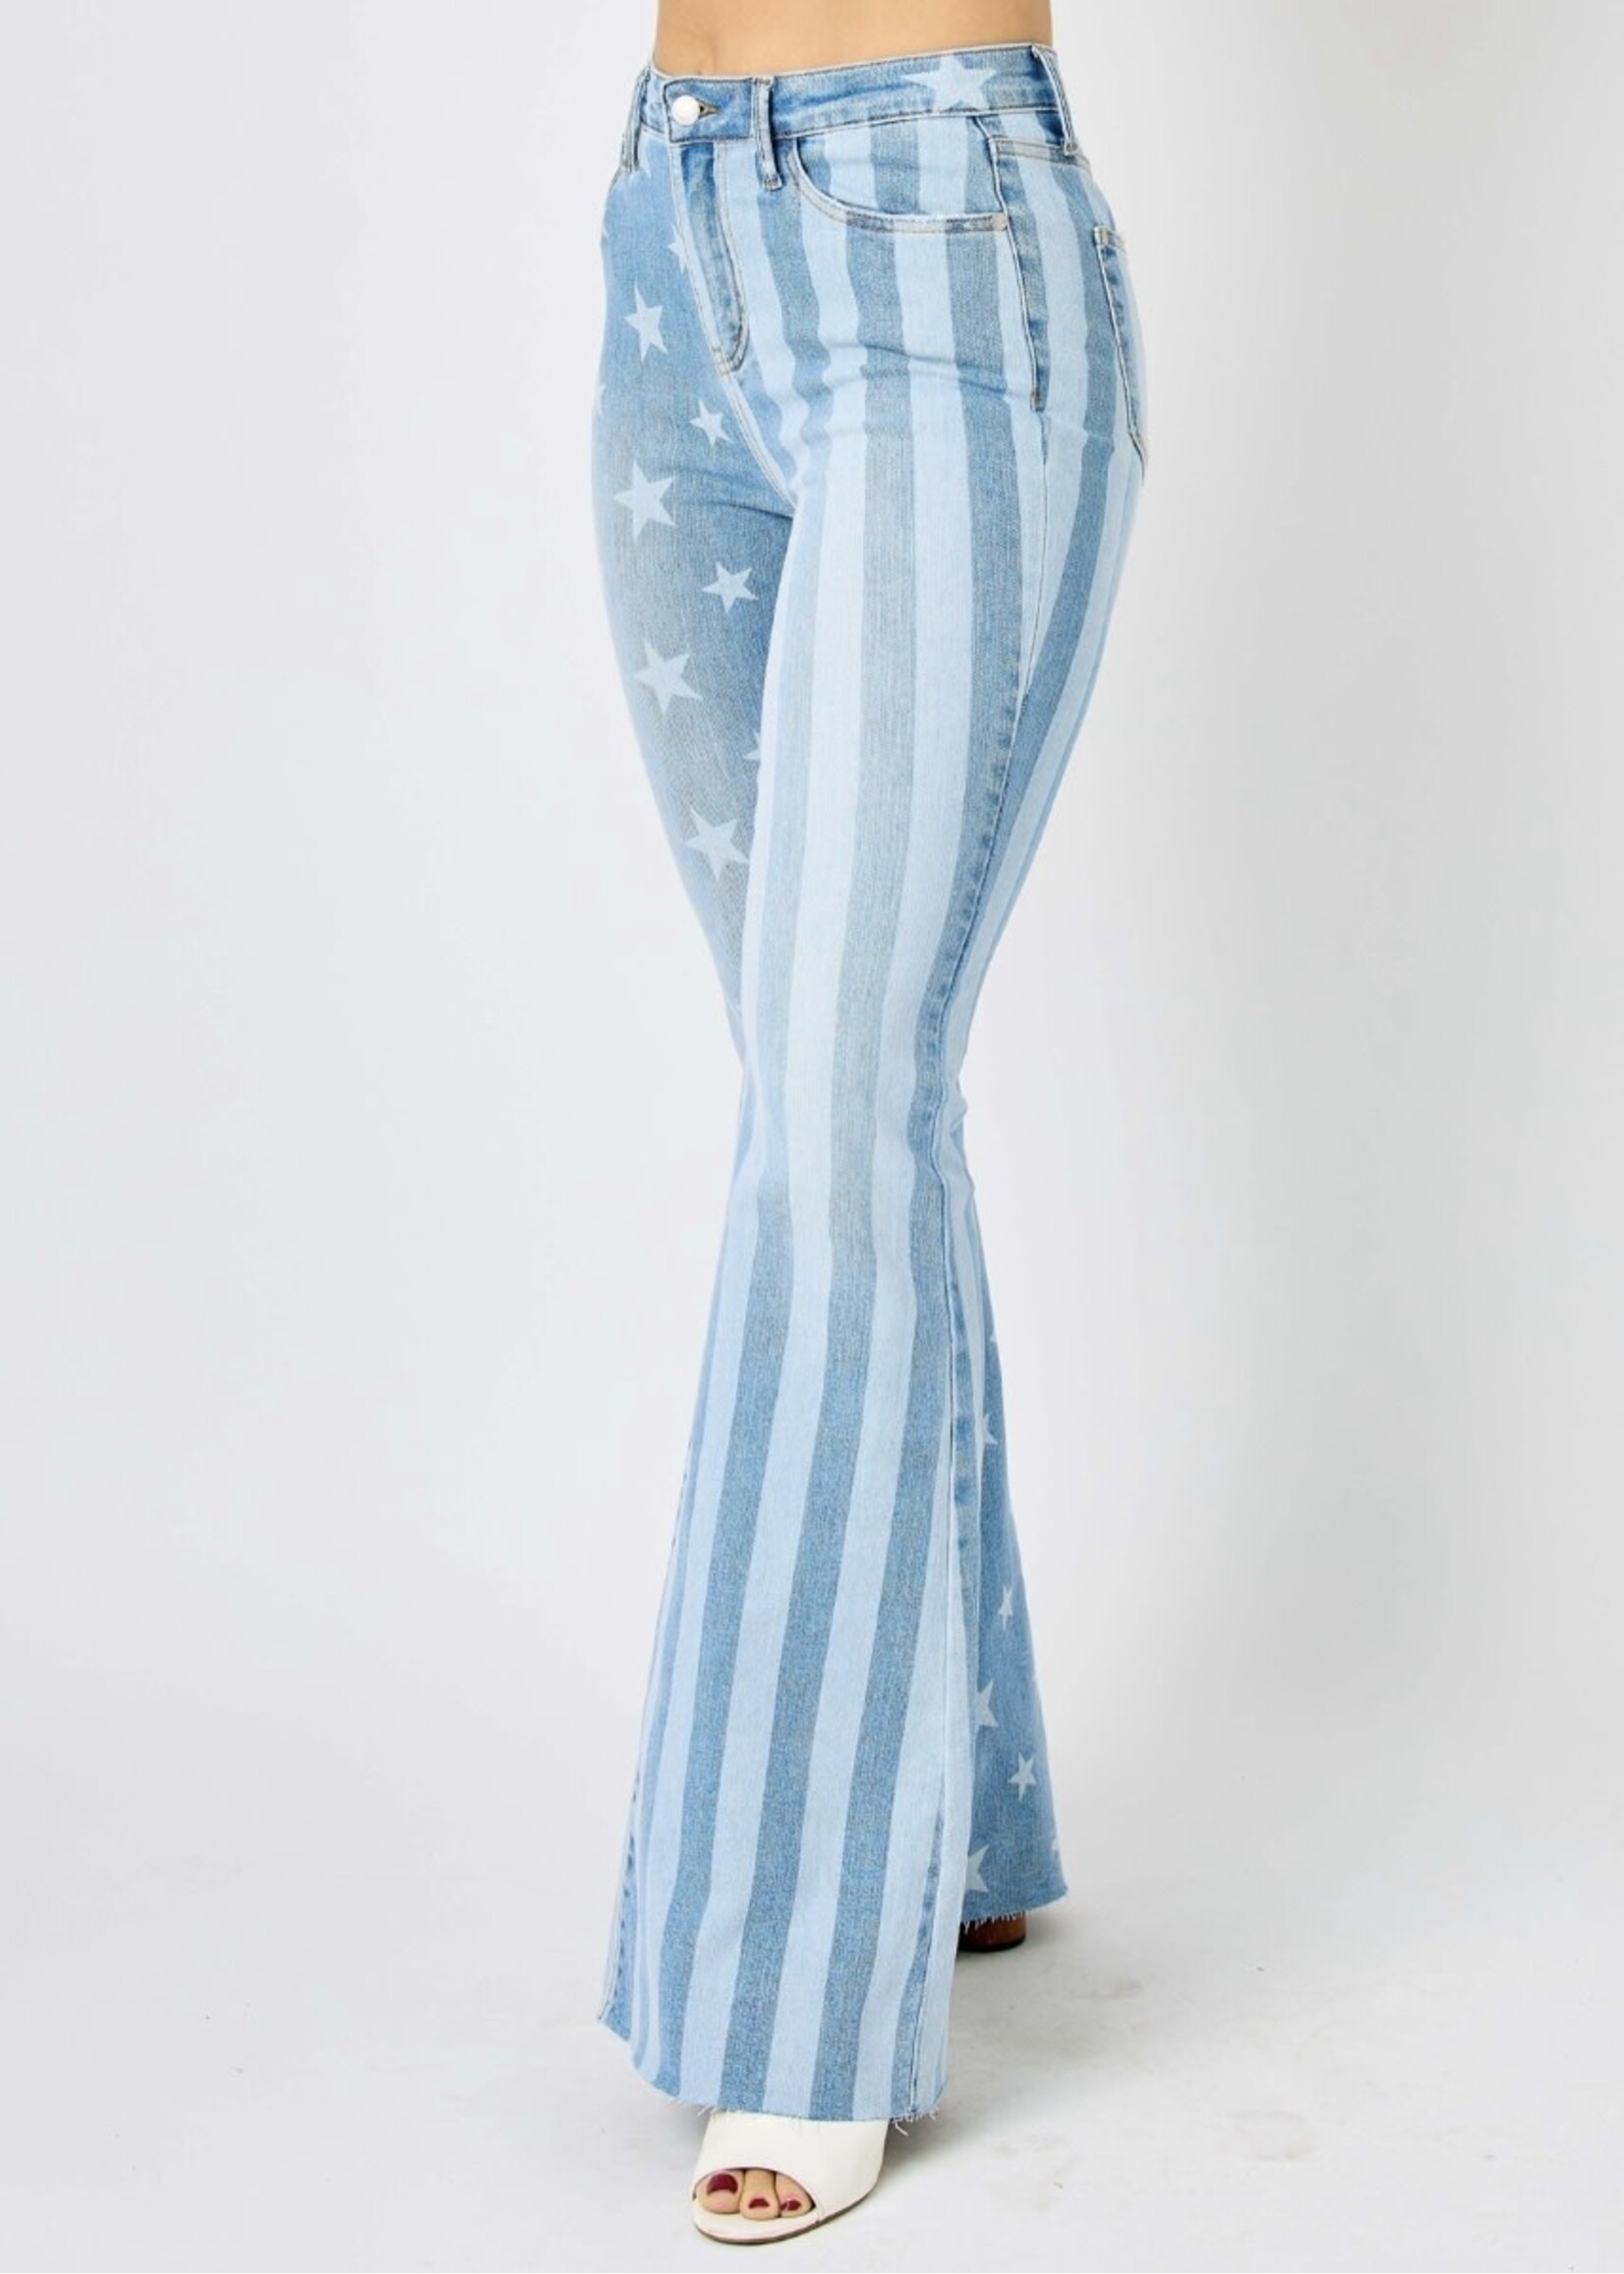 Judy Blue Stars & Stripes Jeans